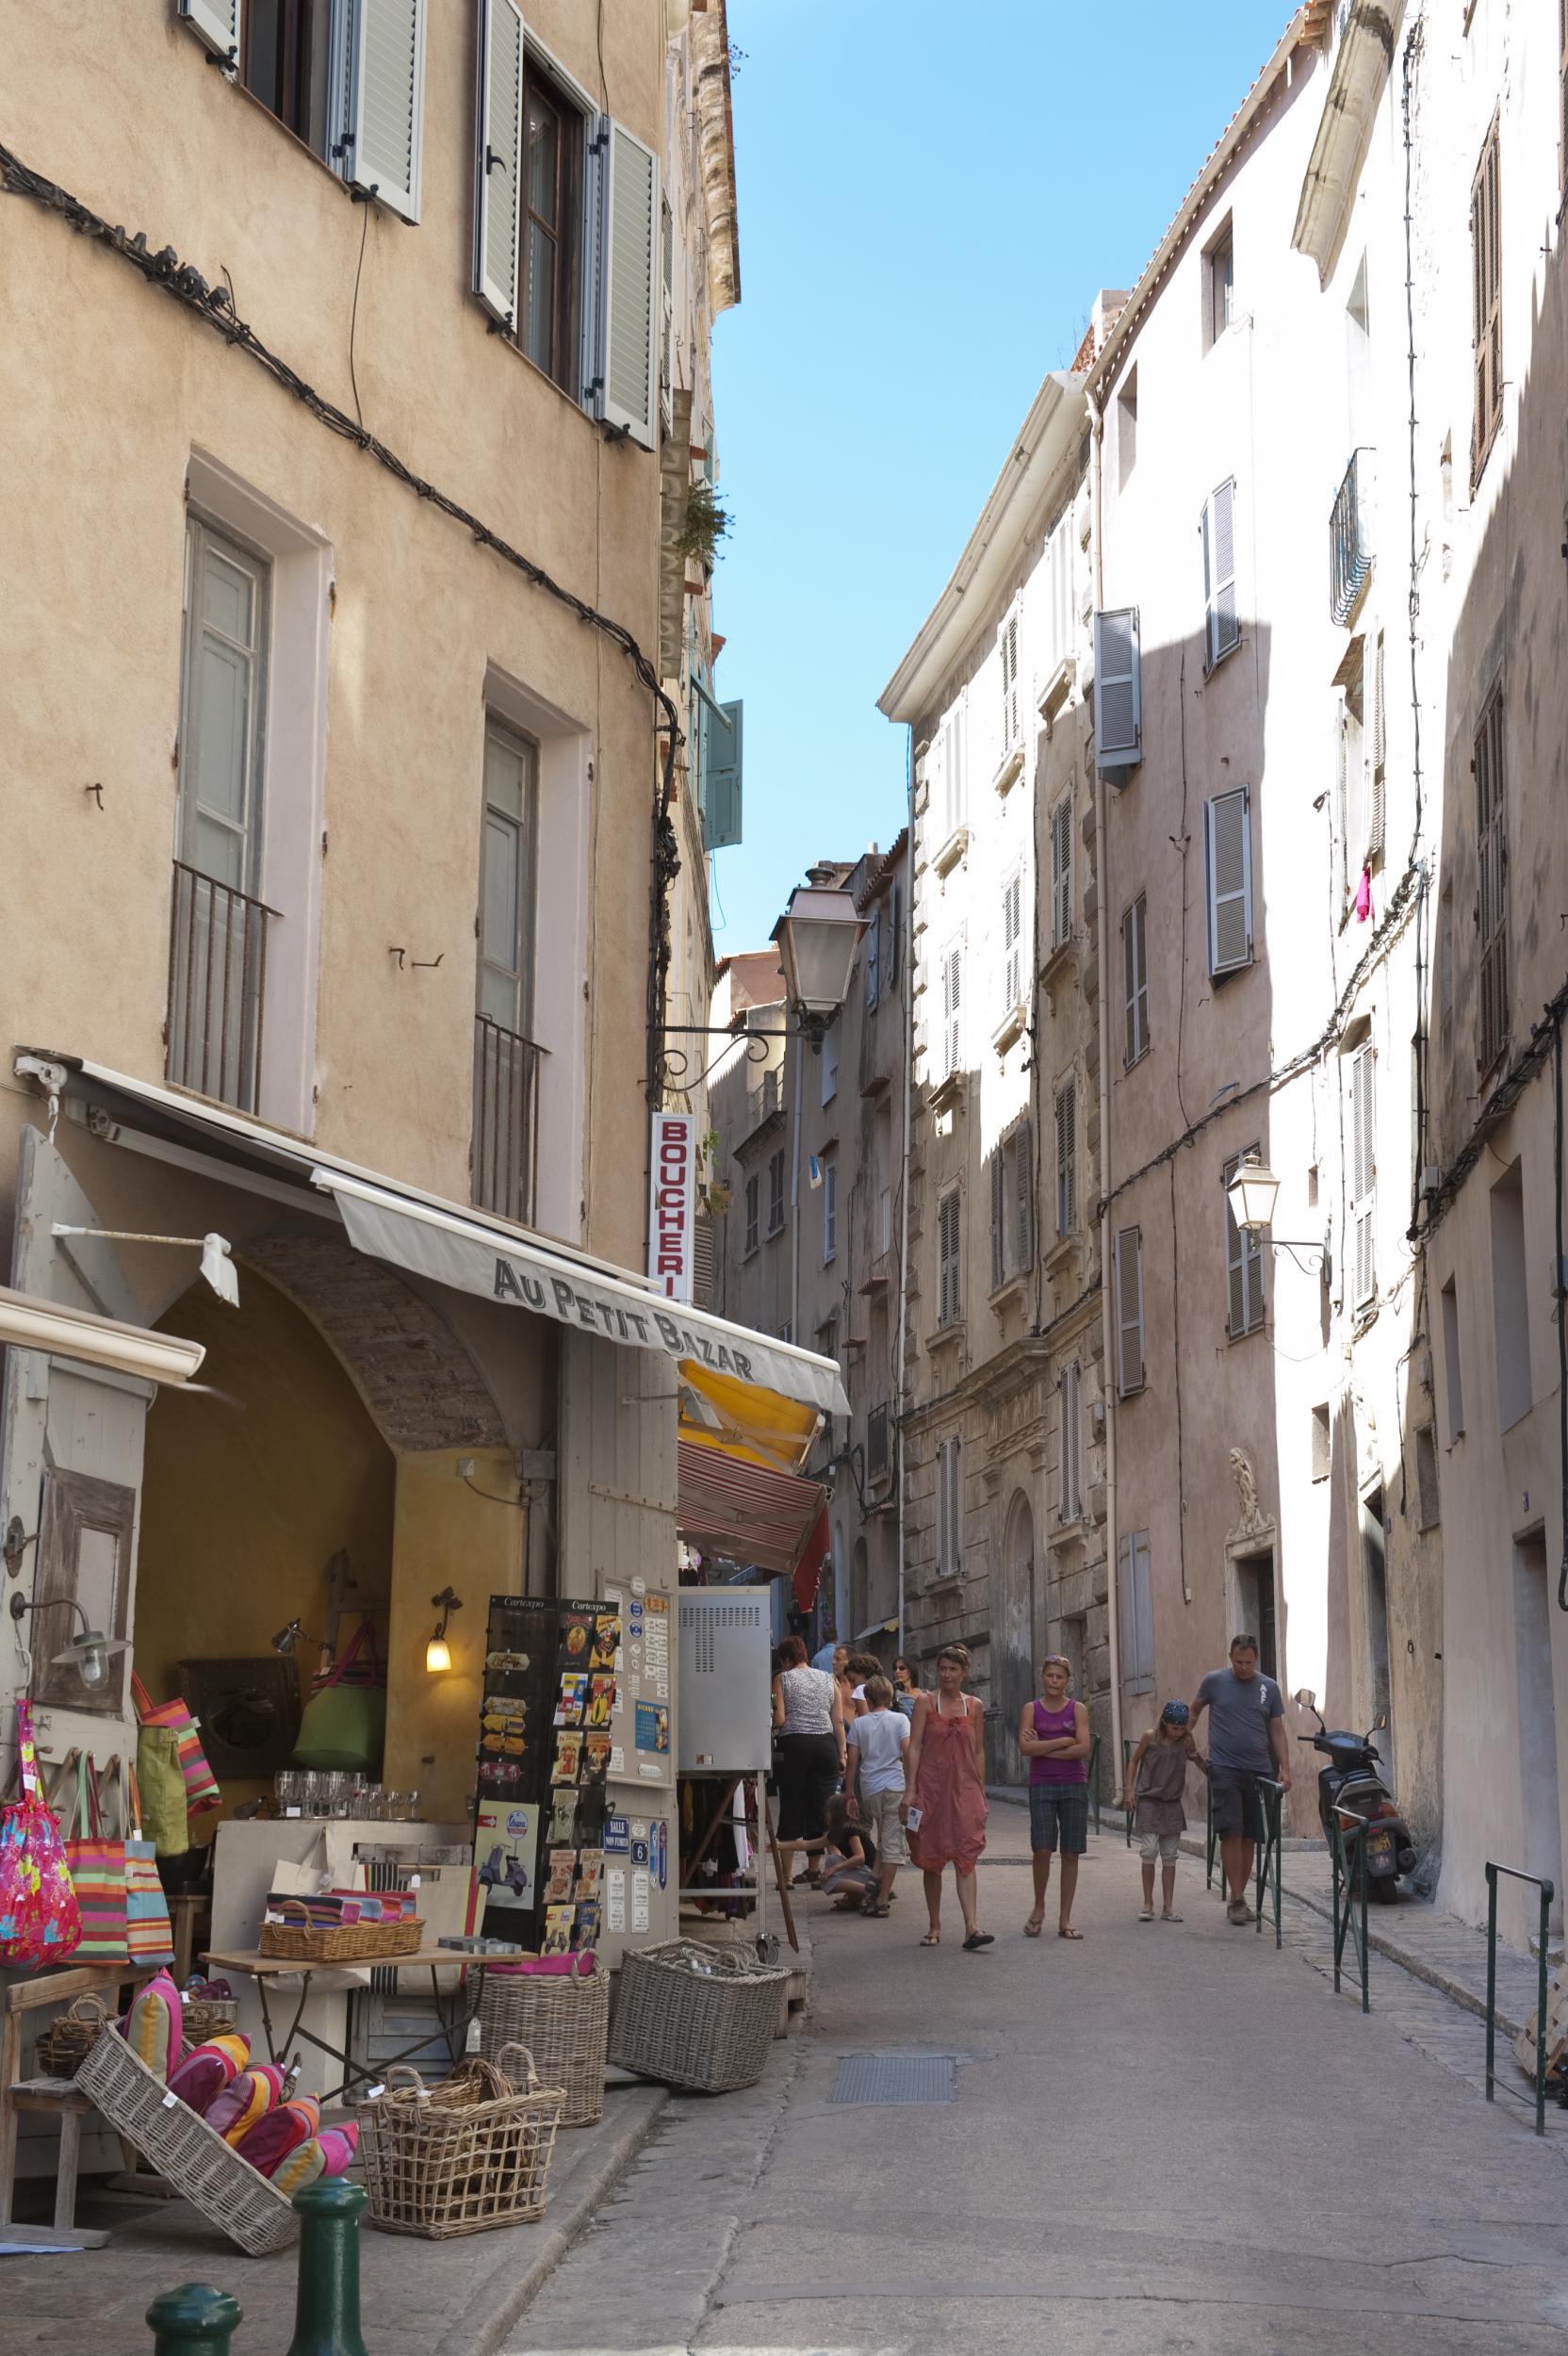 Bonifacio's narrow streets